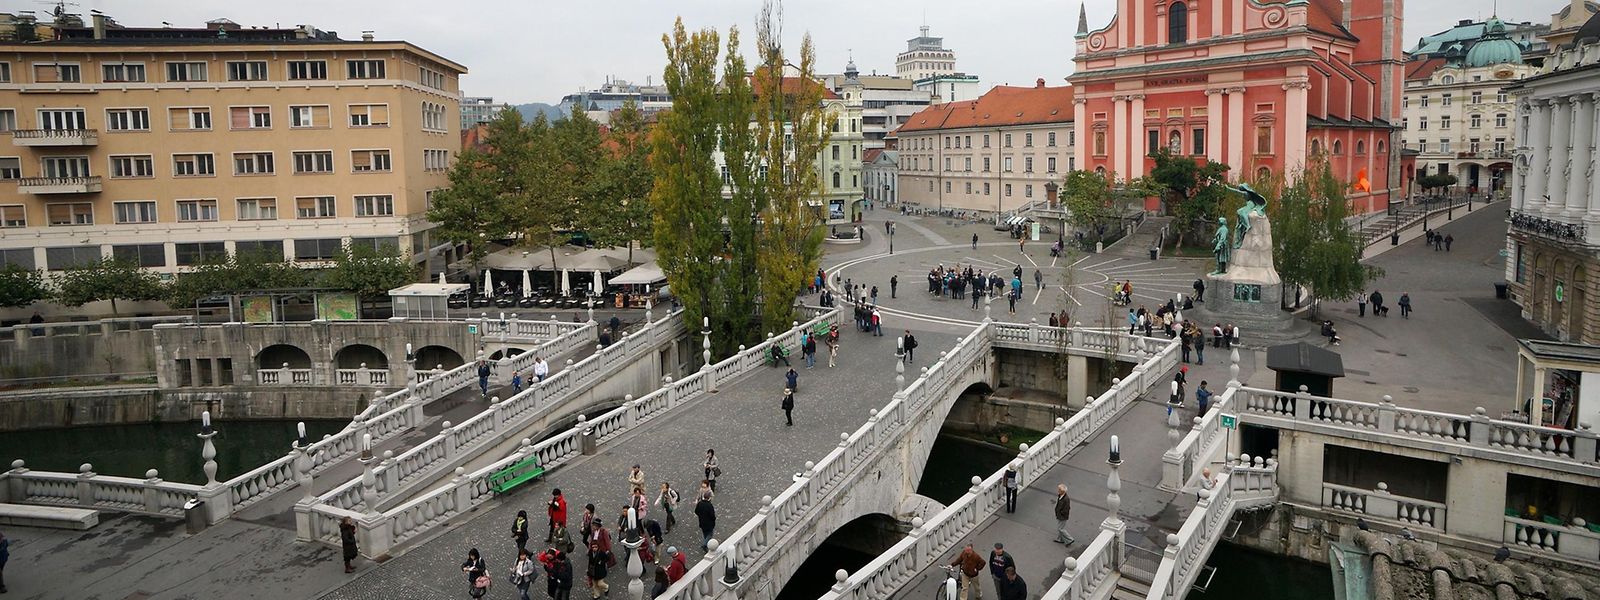 Eine architektonische Besonderheit ist die dreispännige „Tromostovje“ des Architekten Joze Plecnik, der vielerorts seiner Geburtsstadt Ljubljana seinen Stempel aufdrückte. 